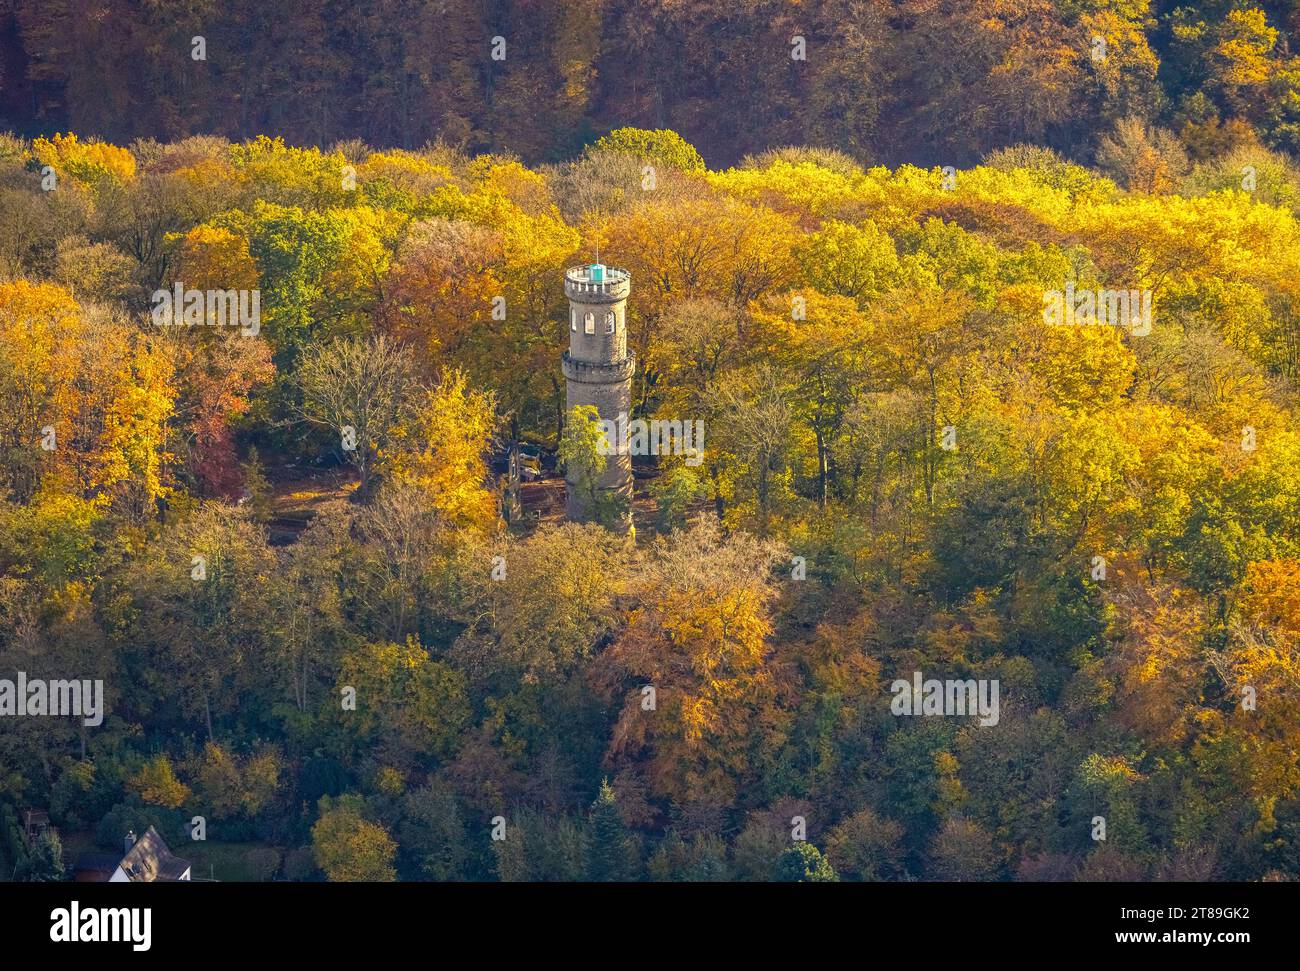 Vue aérienne, Helenenturm rénové avec plate-forme d'observation dans la forêt d'automne avec des arbres à feuilles caduques aux couleurs vives d'automne, Witten, région de la Ruhr, Nord RHI Banque D'Images